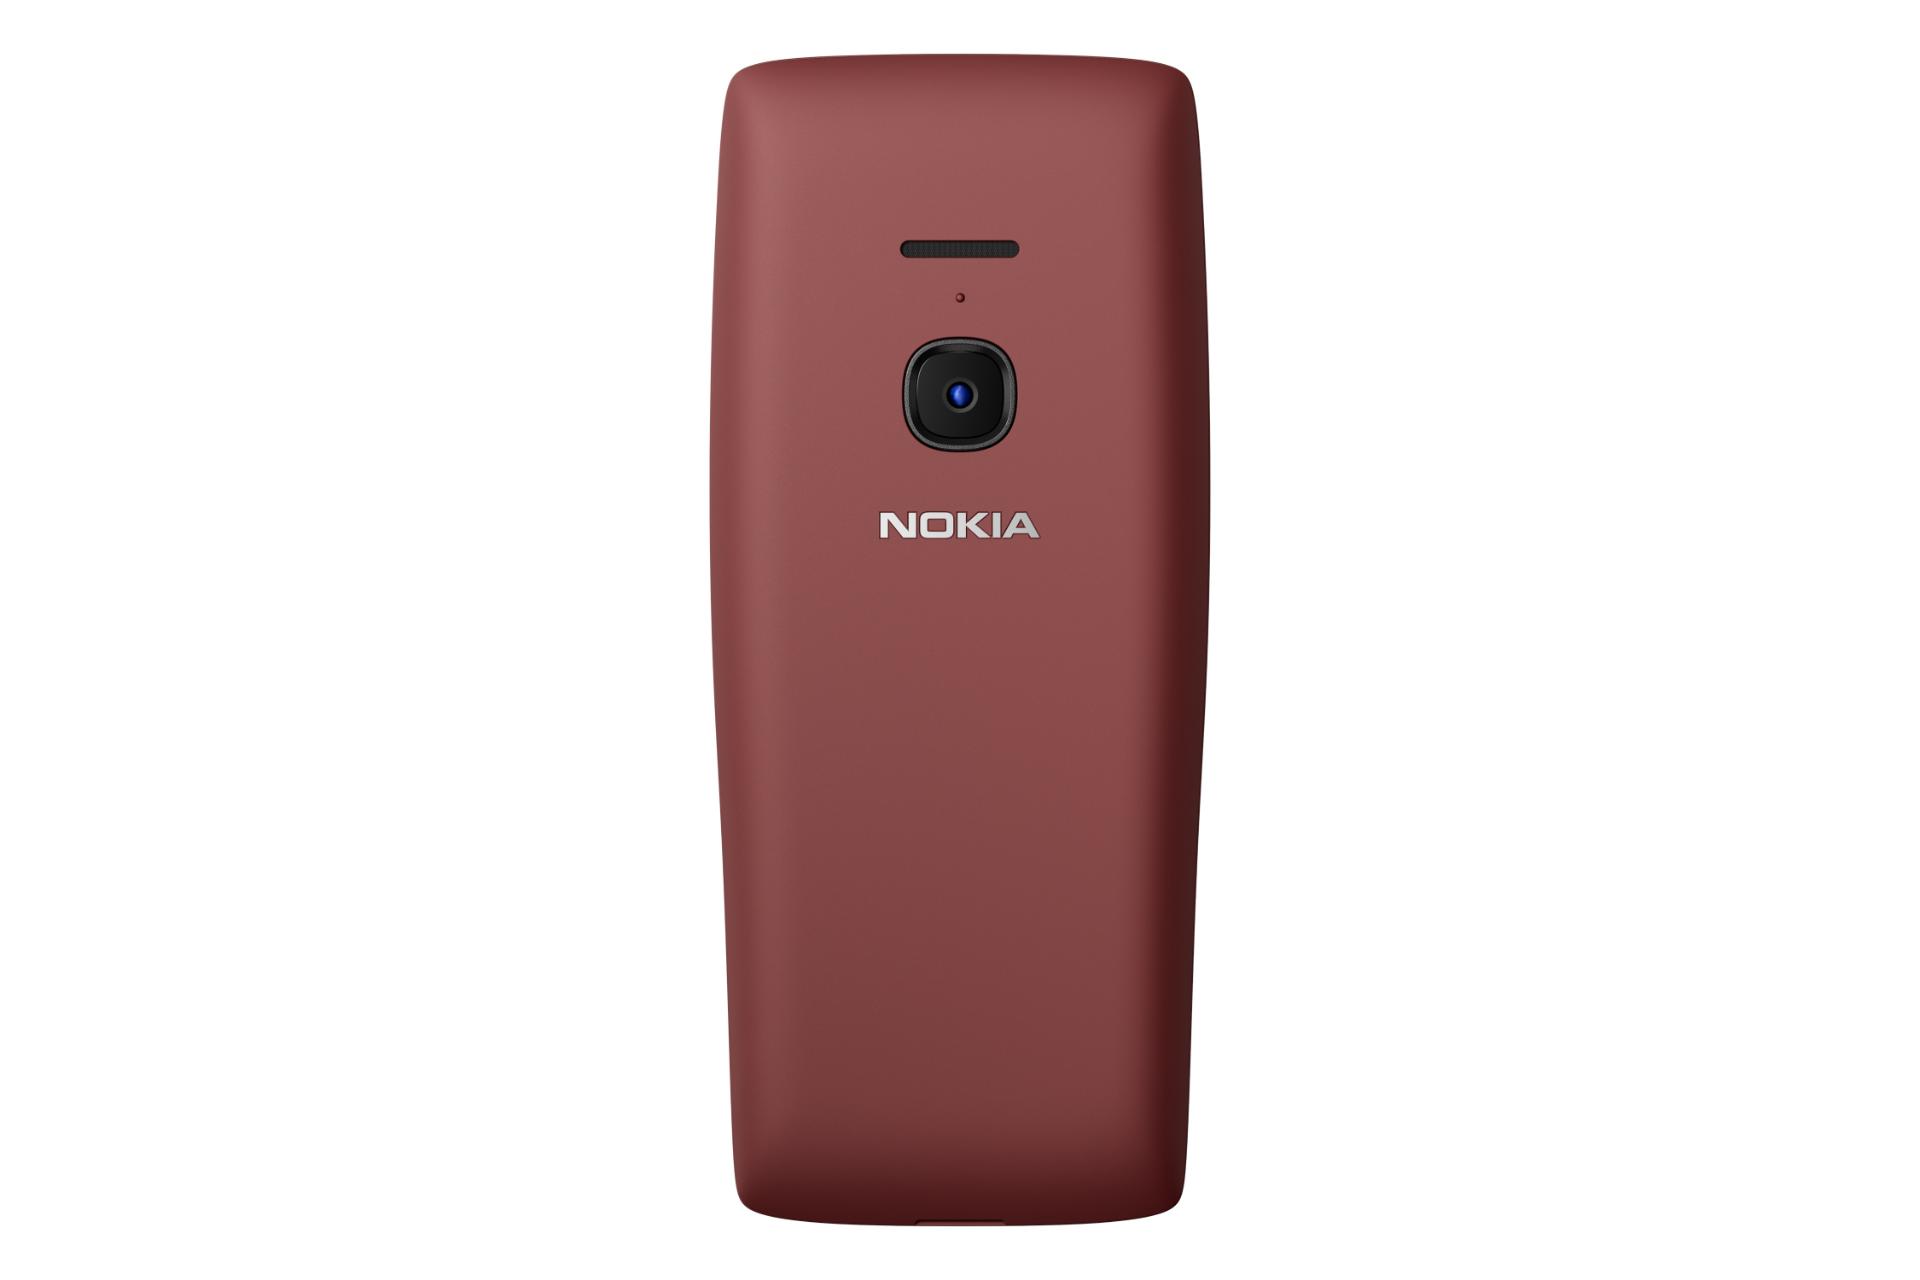 پنل پشت گوشی موبایل نوکیا Nokia 8210 4G قرمز